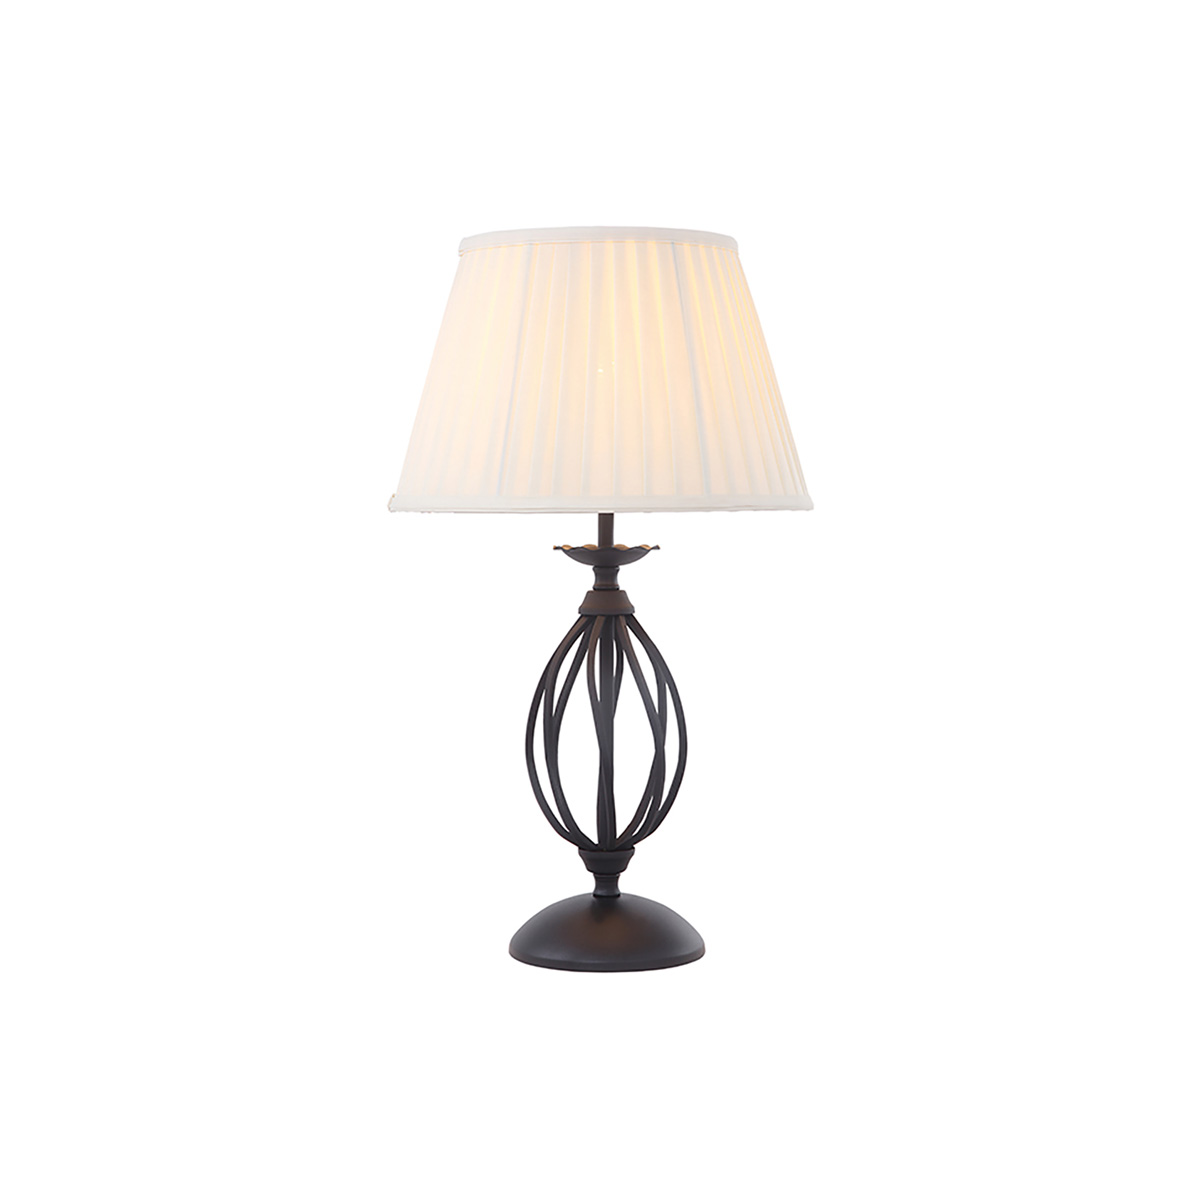 Настольная лампа ART-TL-BLACK, Настольные лампы Классический | Металл | Чёрный | Прихожая, спальня, гостиная, столовая.